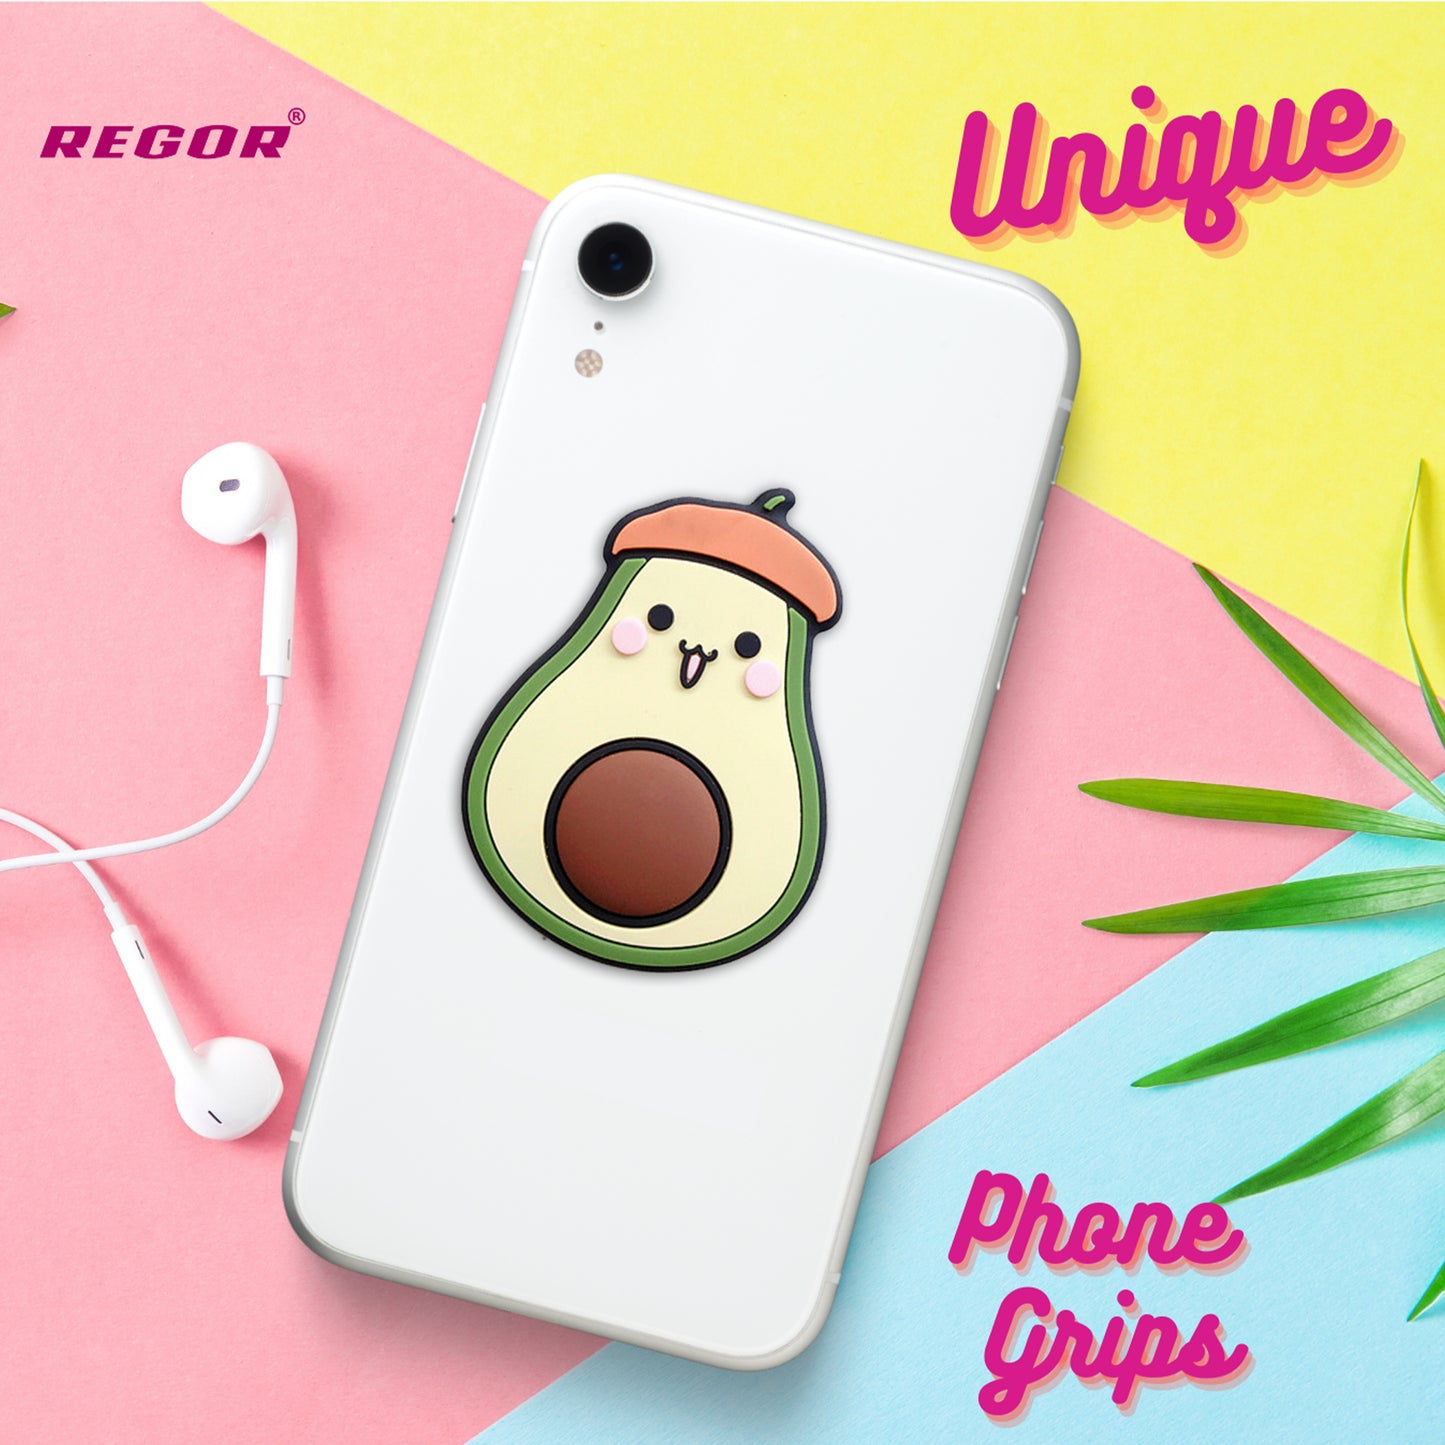 Phone Grip & Selfie Holder - Avocado